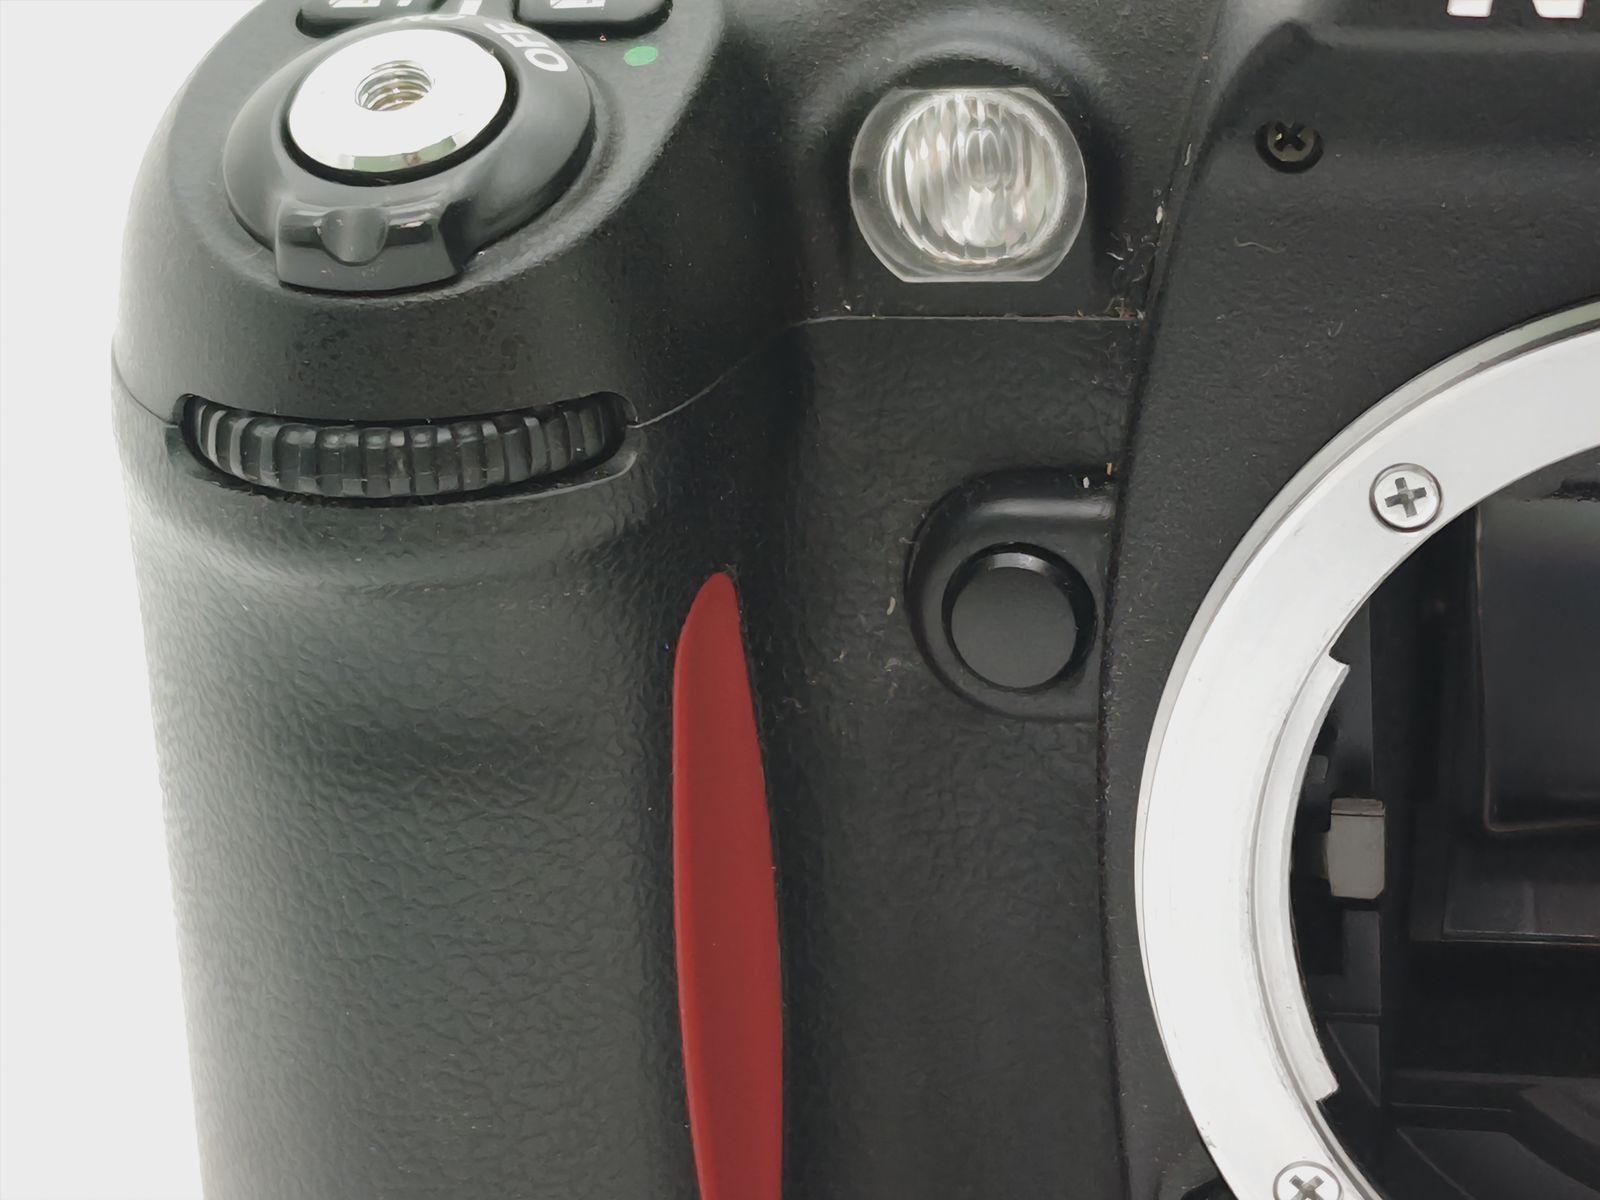 Nikon F80 D 元箱 説明書 付 ニコン 美品